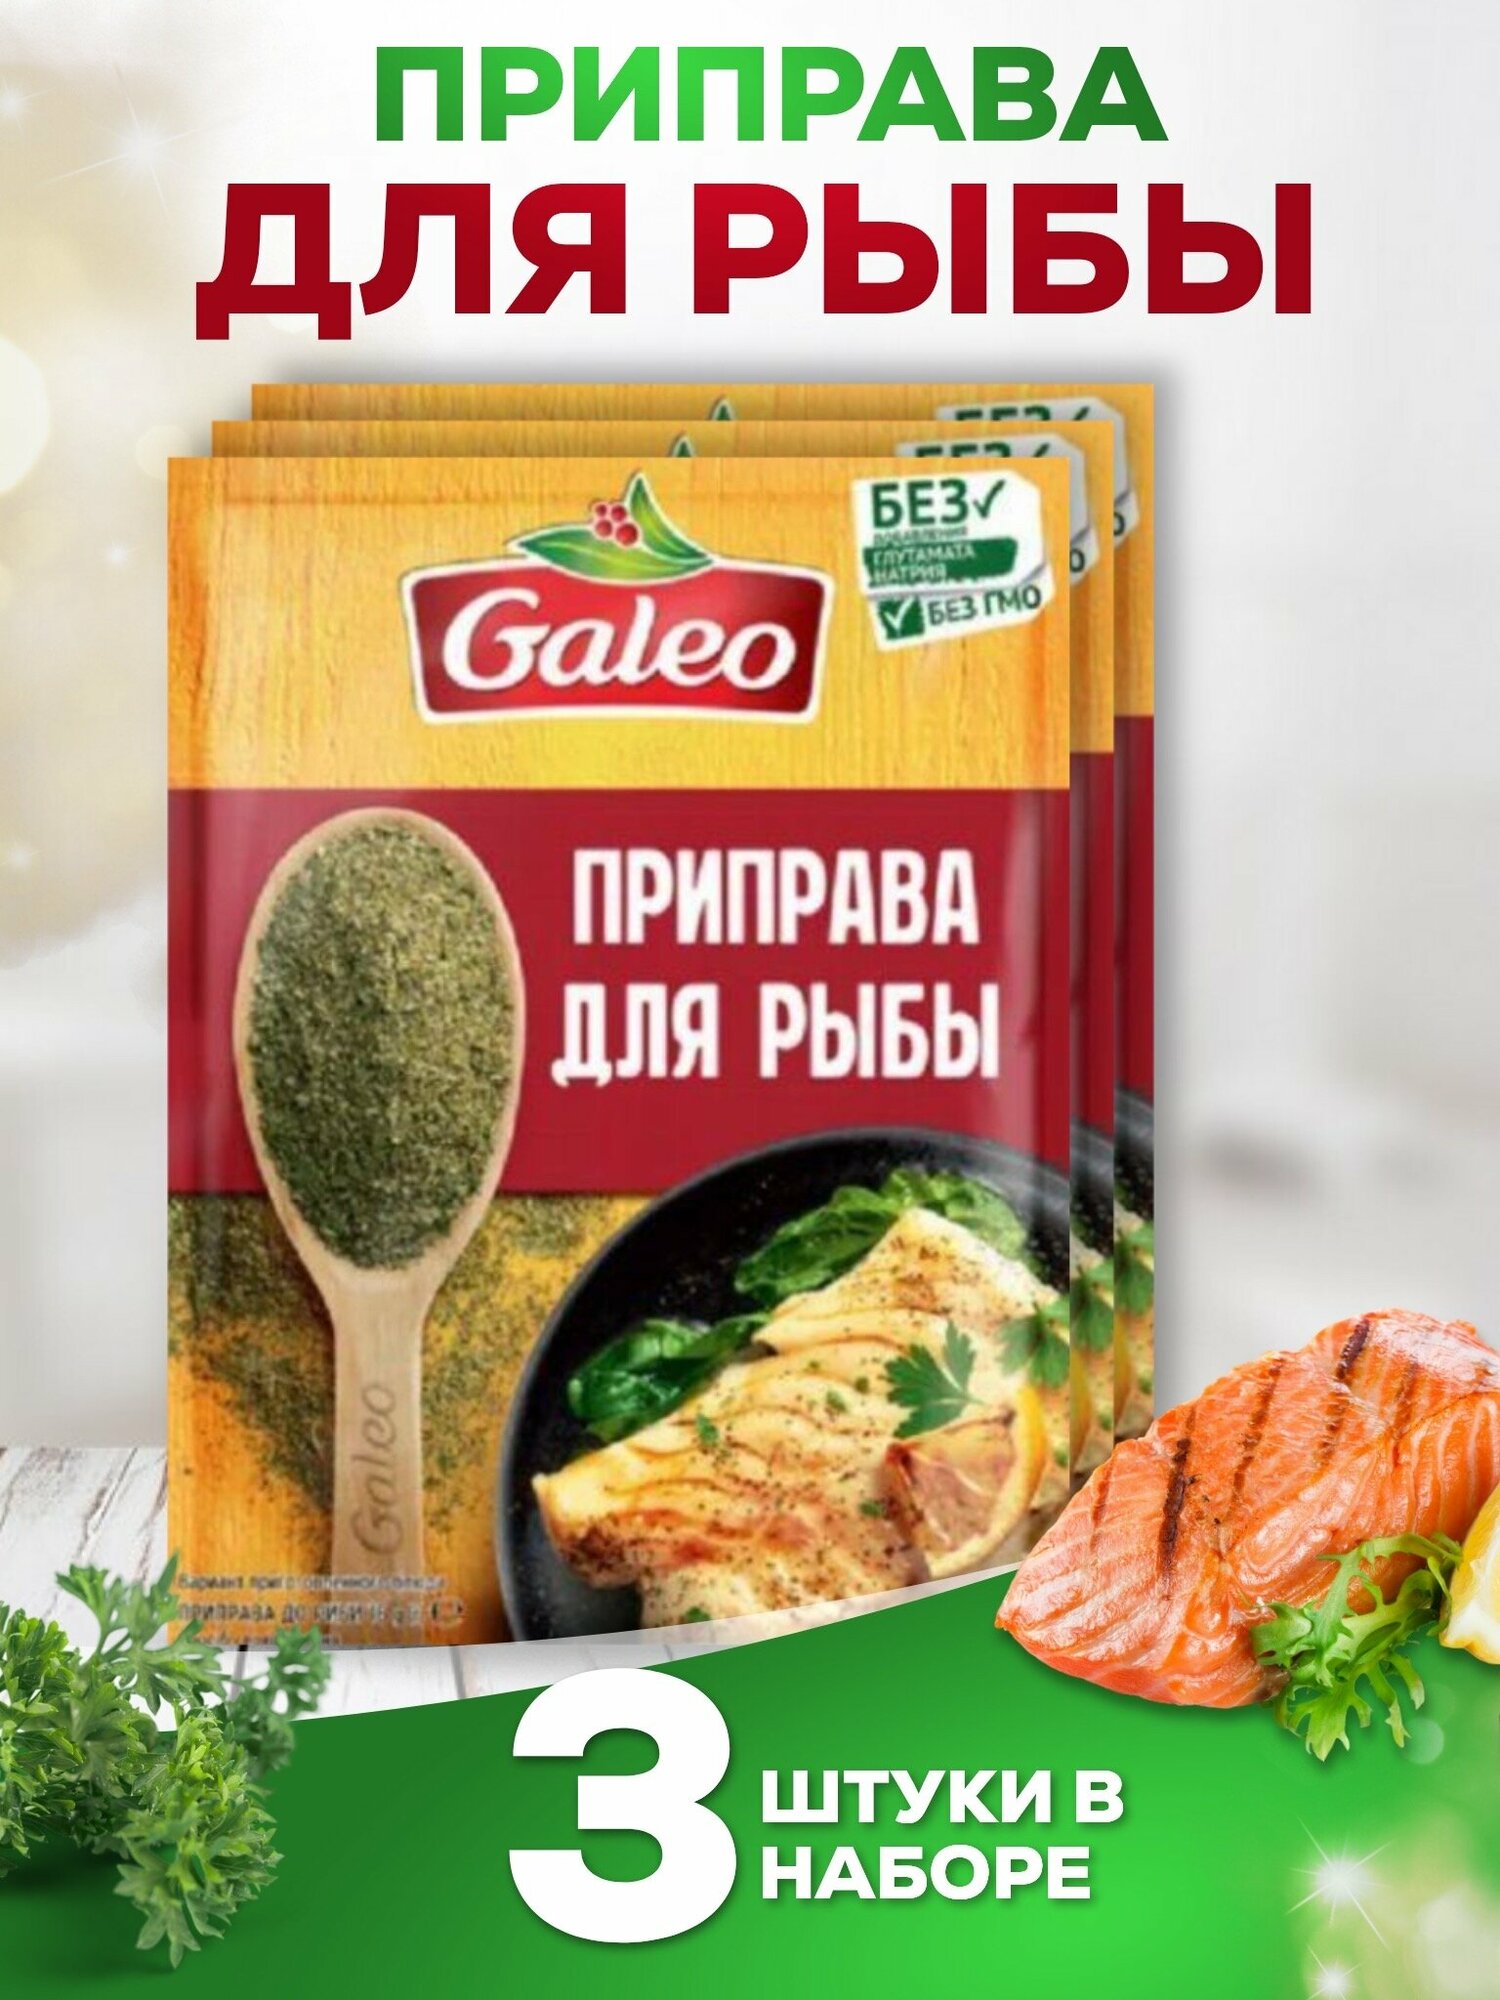 Приправа Для рыбы GALEO, 3 шт. по 16 гр.